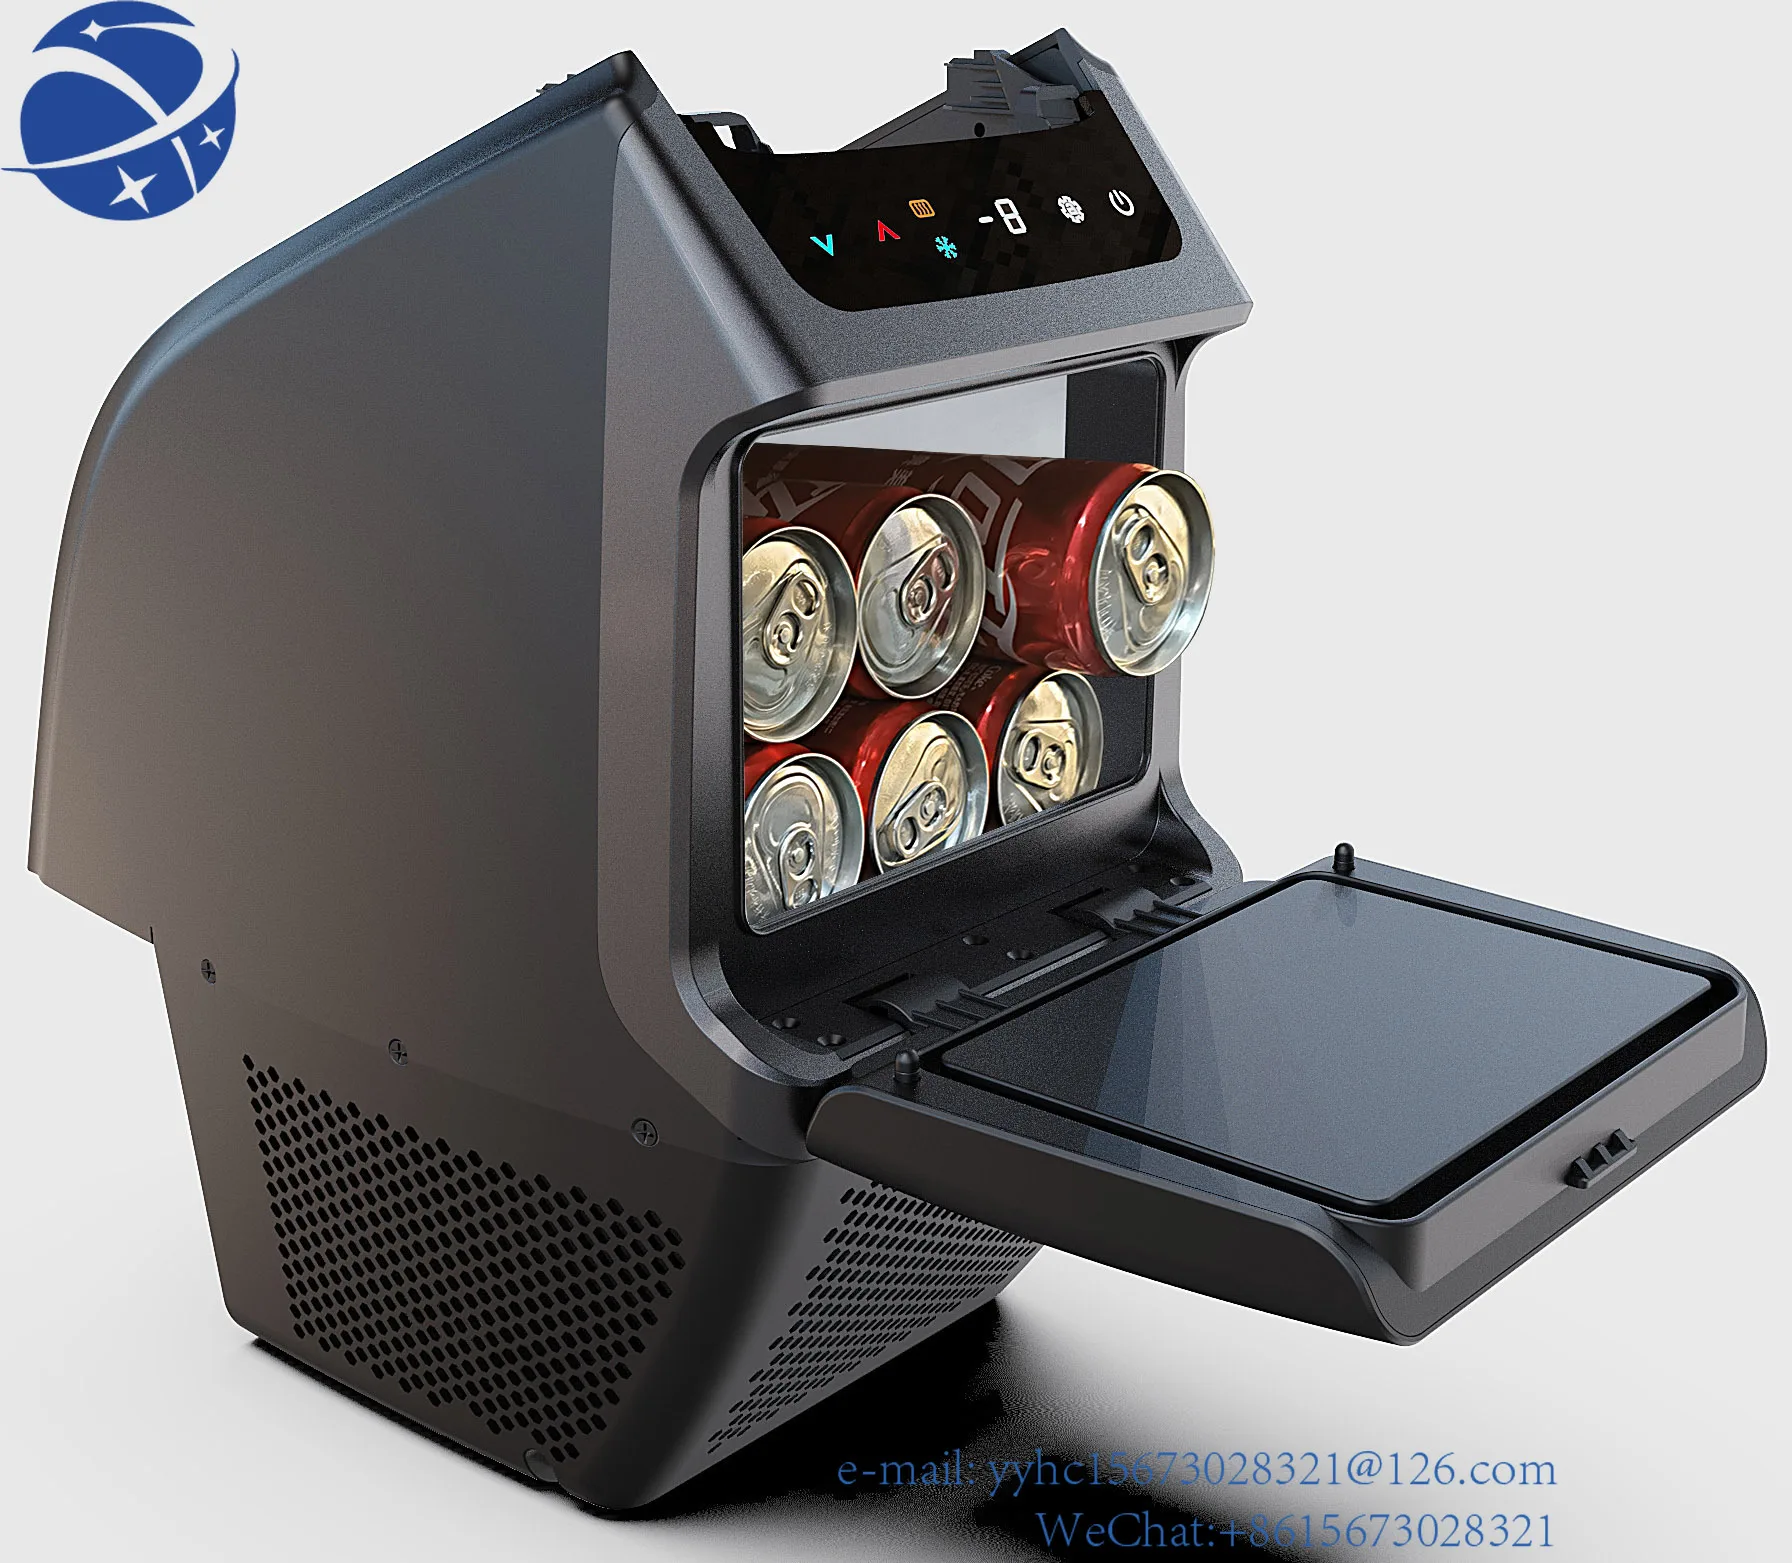 

Yun Yi Model Y accessary 4.6L 12v car armrest fridge freezer DC compressor built in easy install car refrigerator for model Y